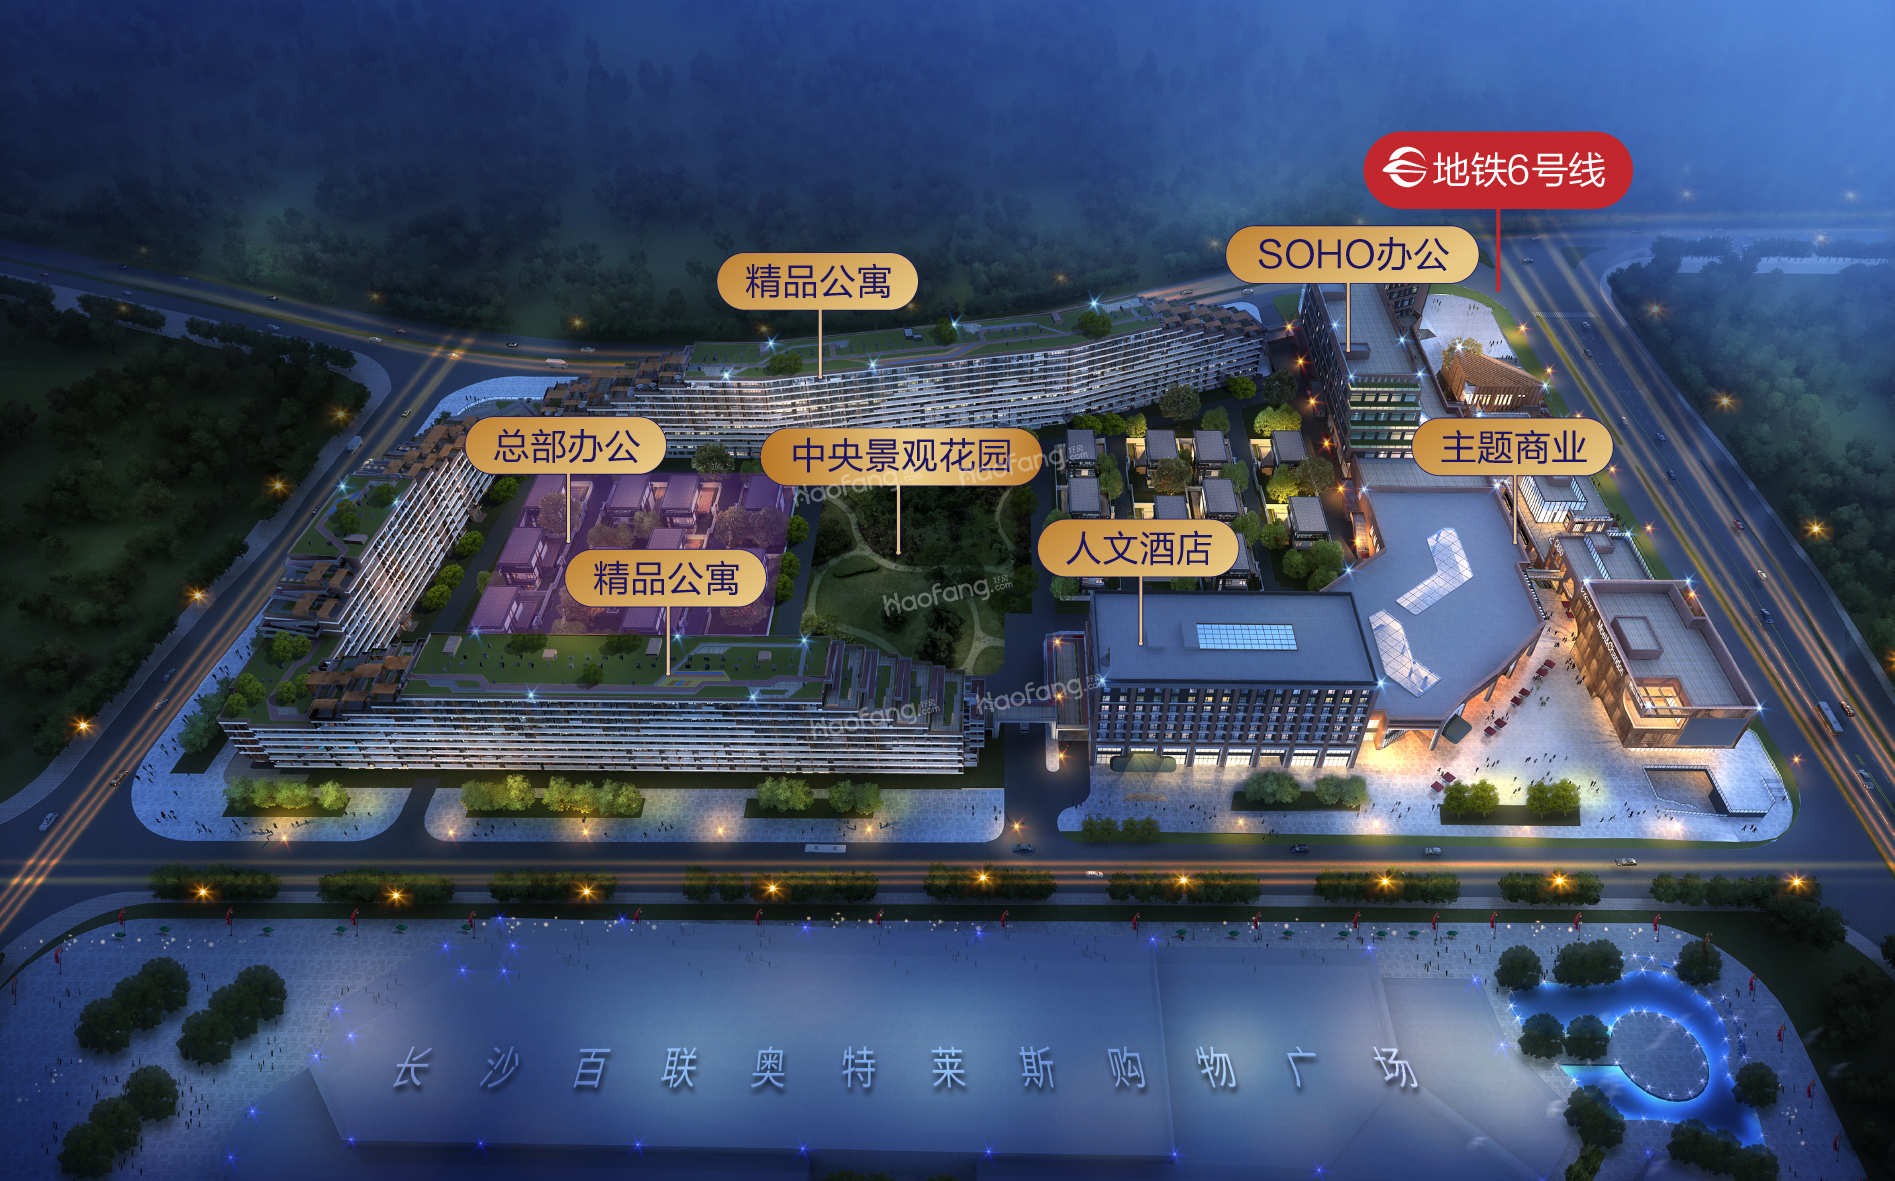 长沙百联购物公园·空港8号位置图